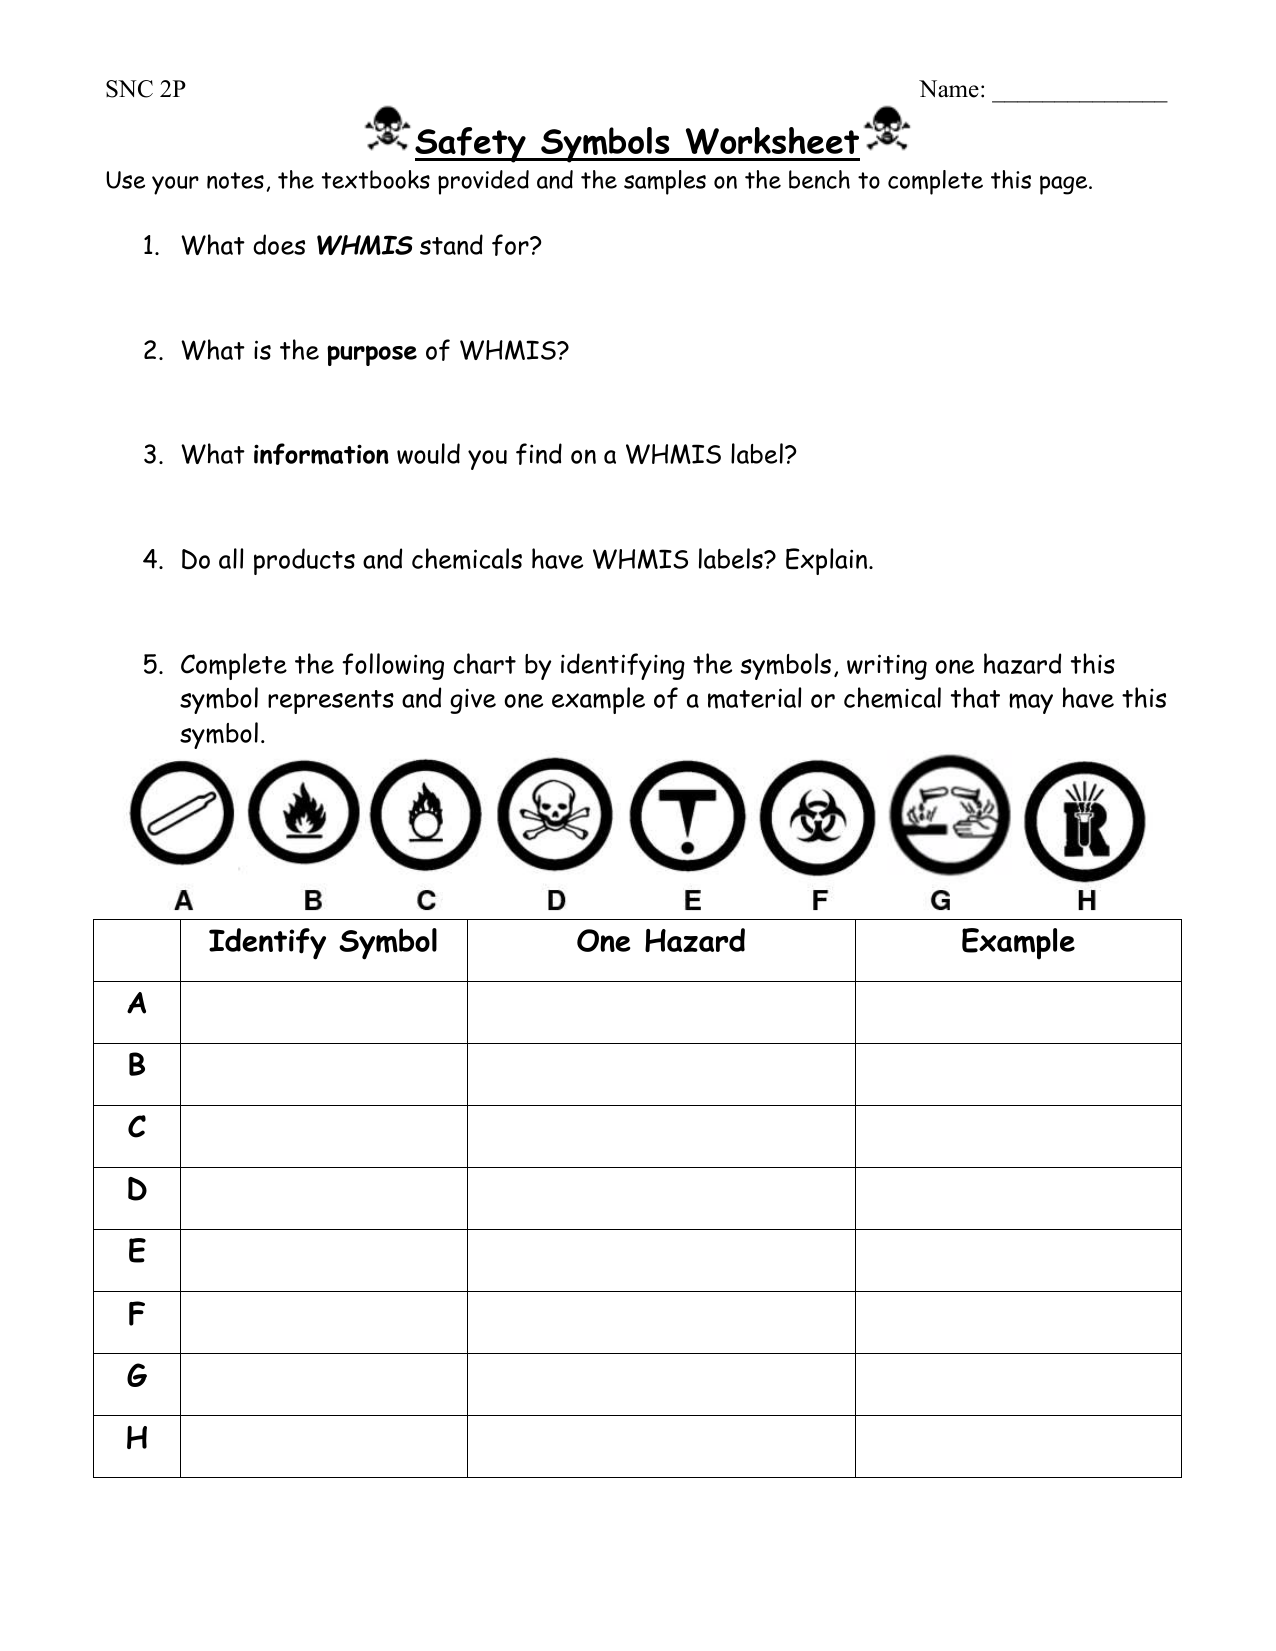 Safety Symbols Worksheet For Lab Safety Symbols Worksheet